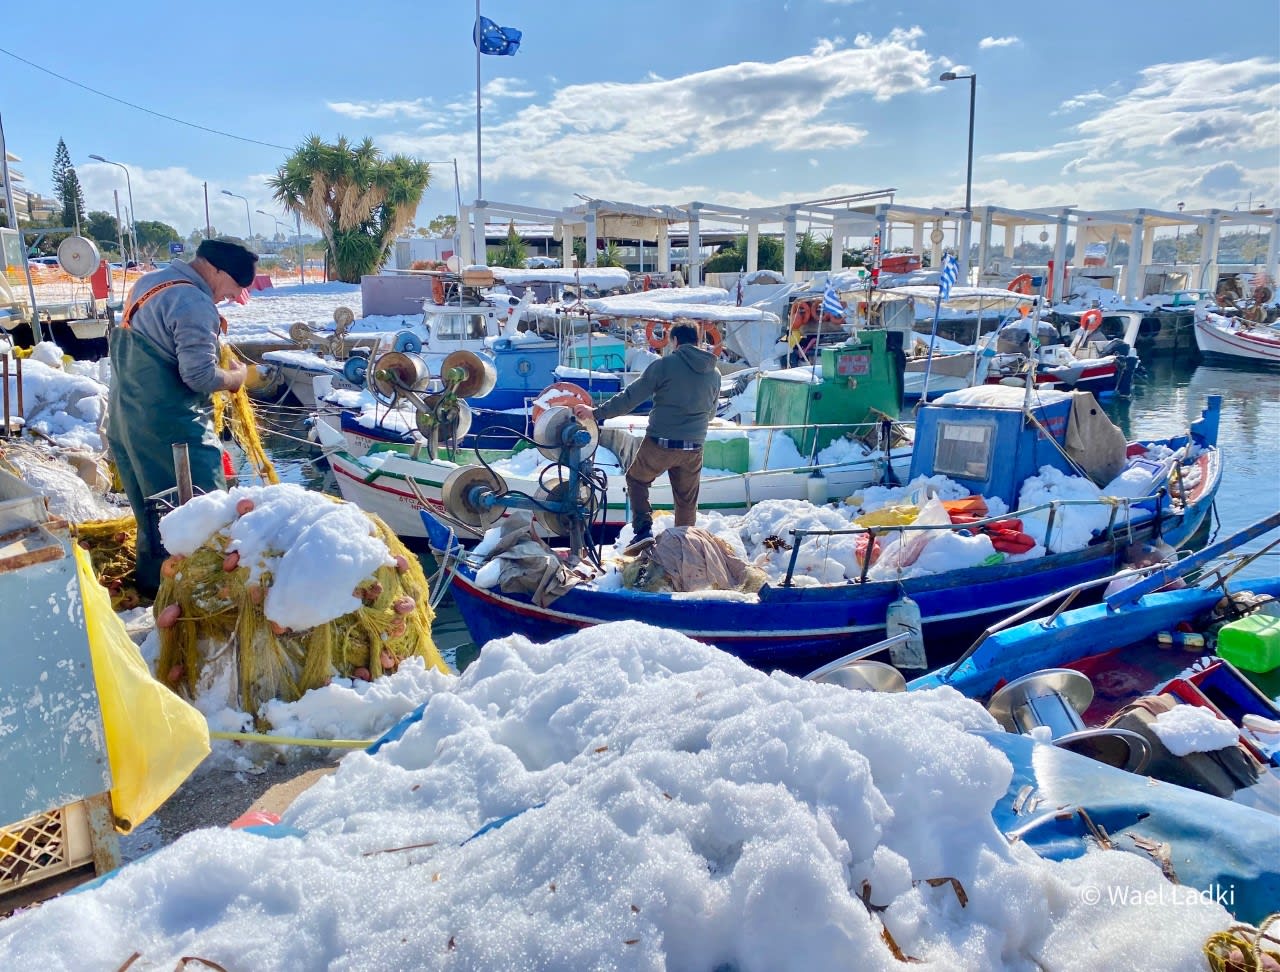 إطلالة نادرة تجمع الثلوج مع البحر الأبيض المتوسط في اليونان